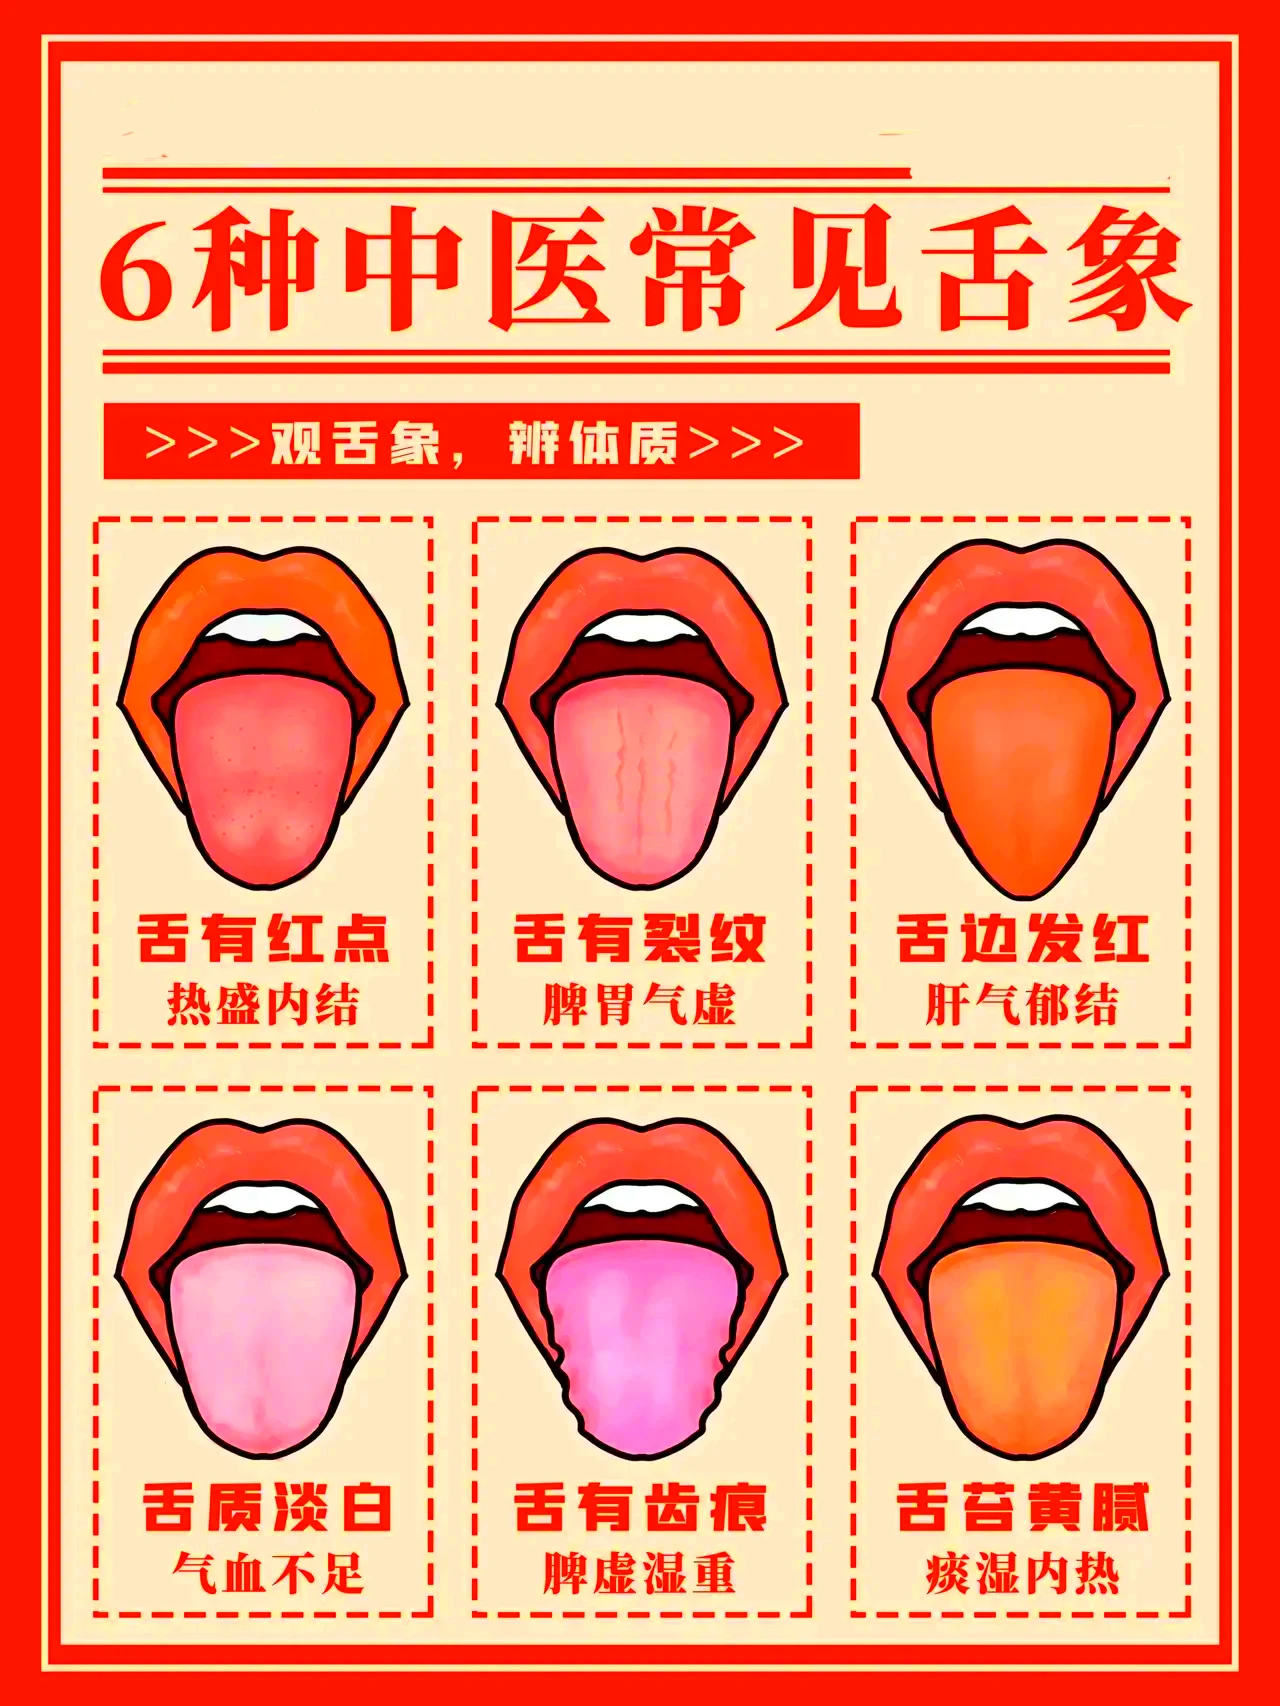 正常人的舌下照片-图库-五毛网